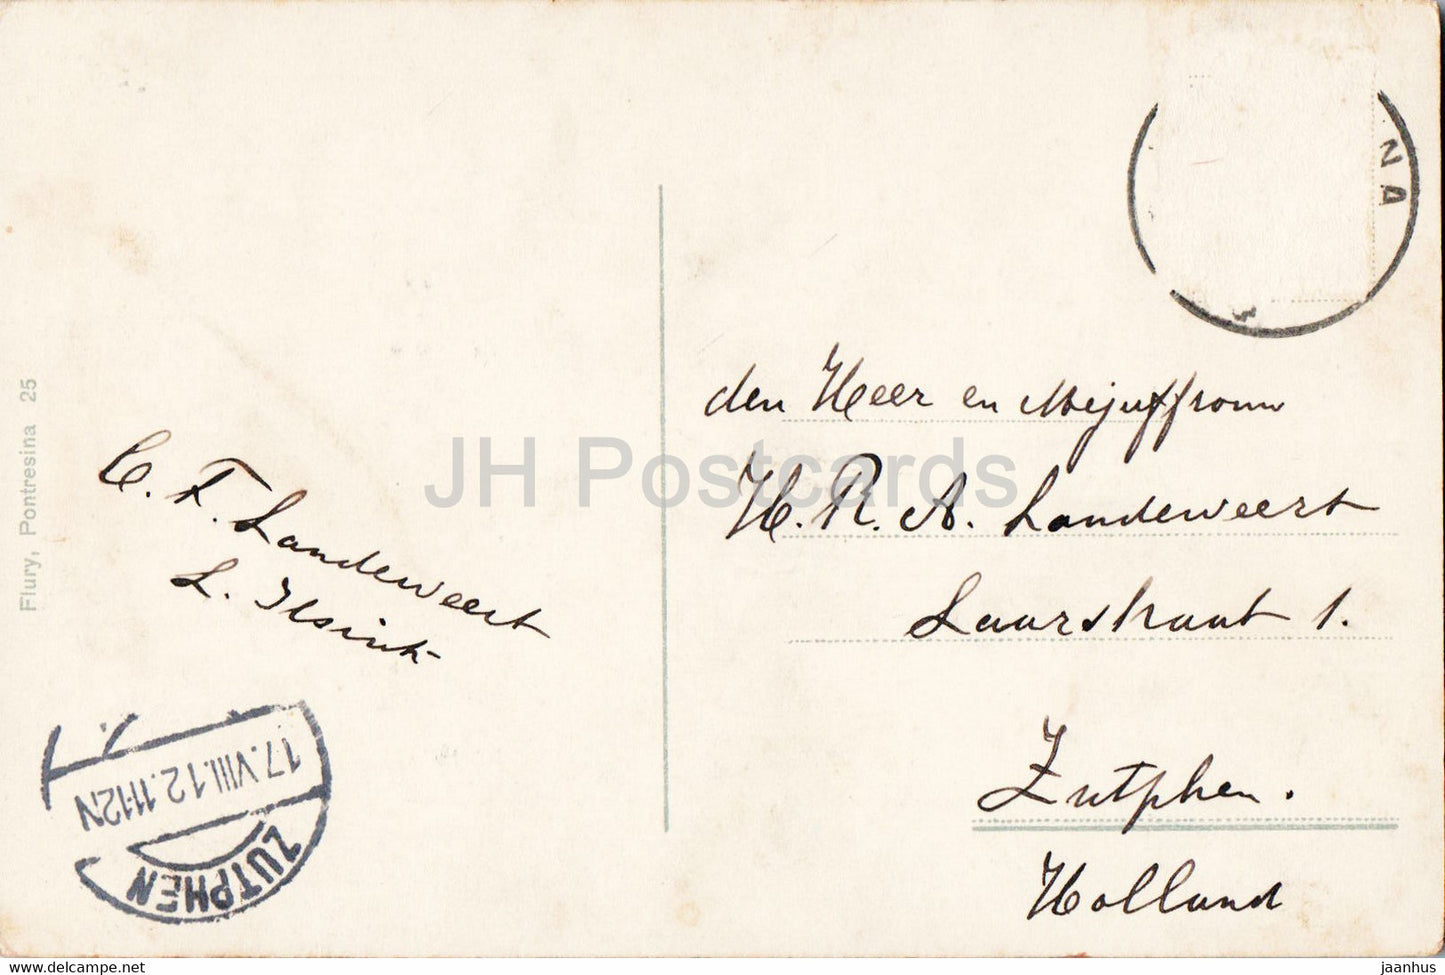 Pontresina mit Piz Palu und Roseggletscher - Roseggruppe - 25 - alte Postkarte - 1912 - Schweiz - gebraucht